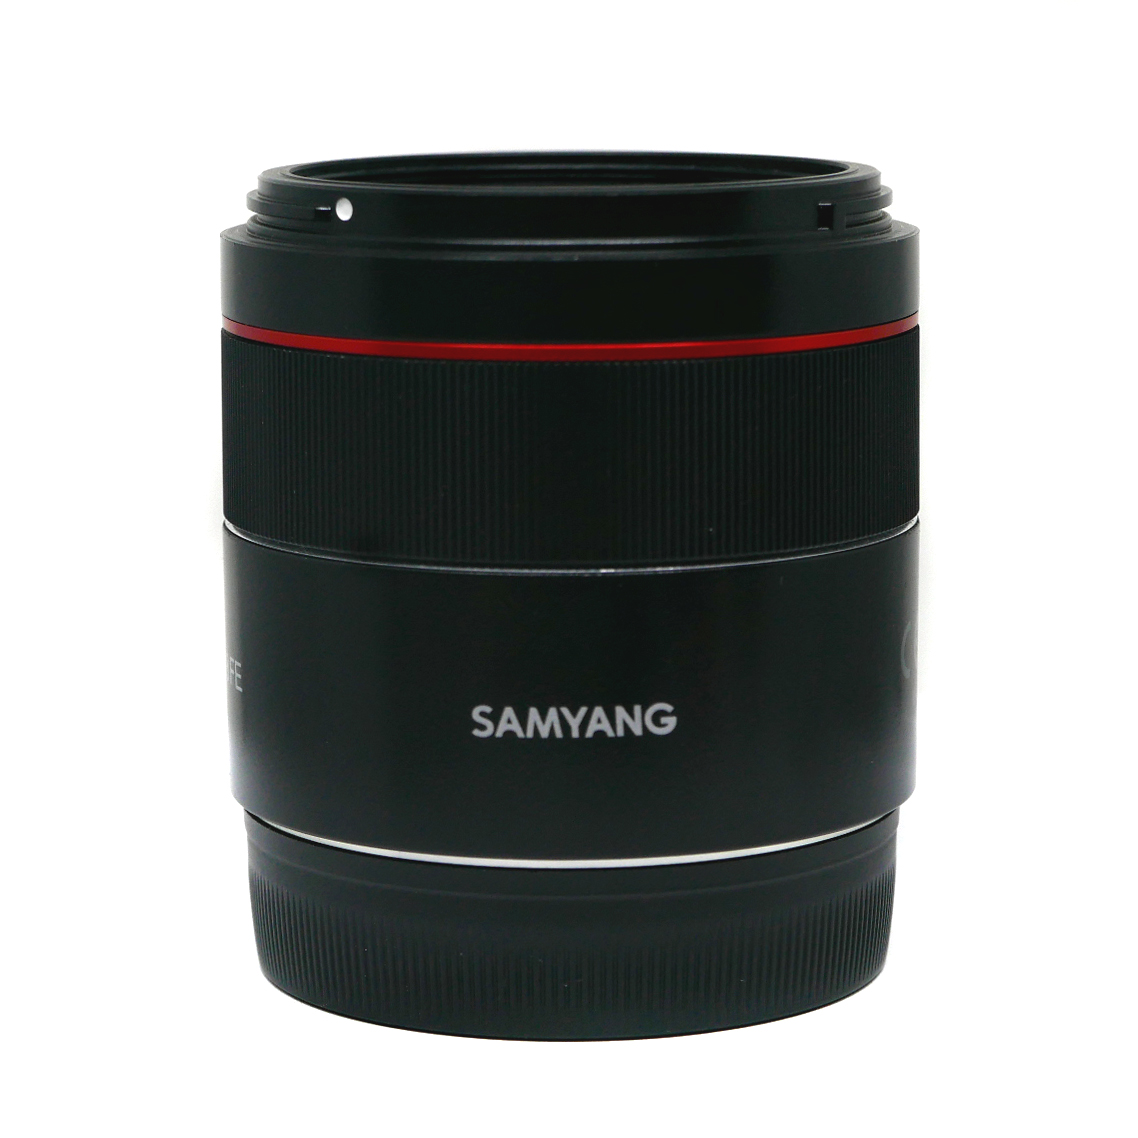 (Myyty) Samyang AF 45mm f/1.8 (Sony FE) (käytetty) (takuu)